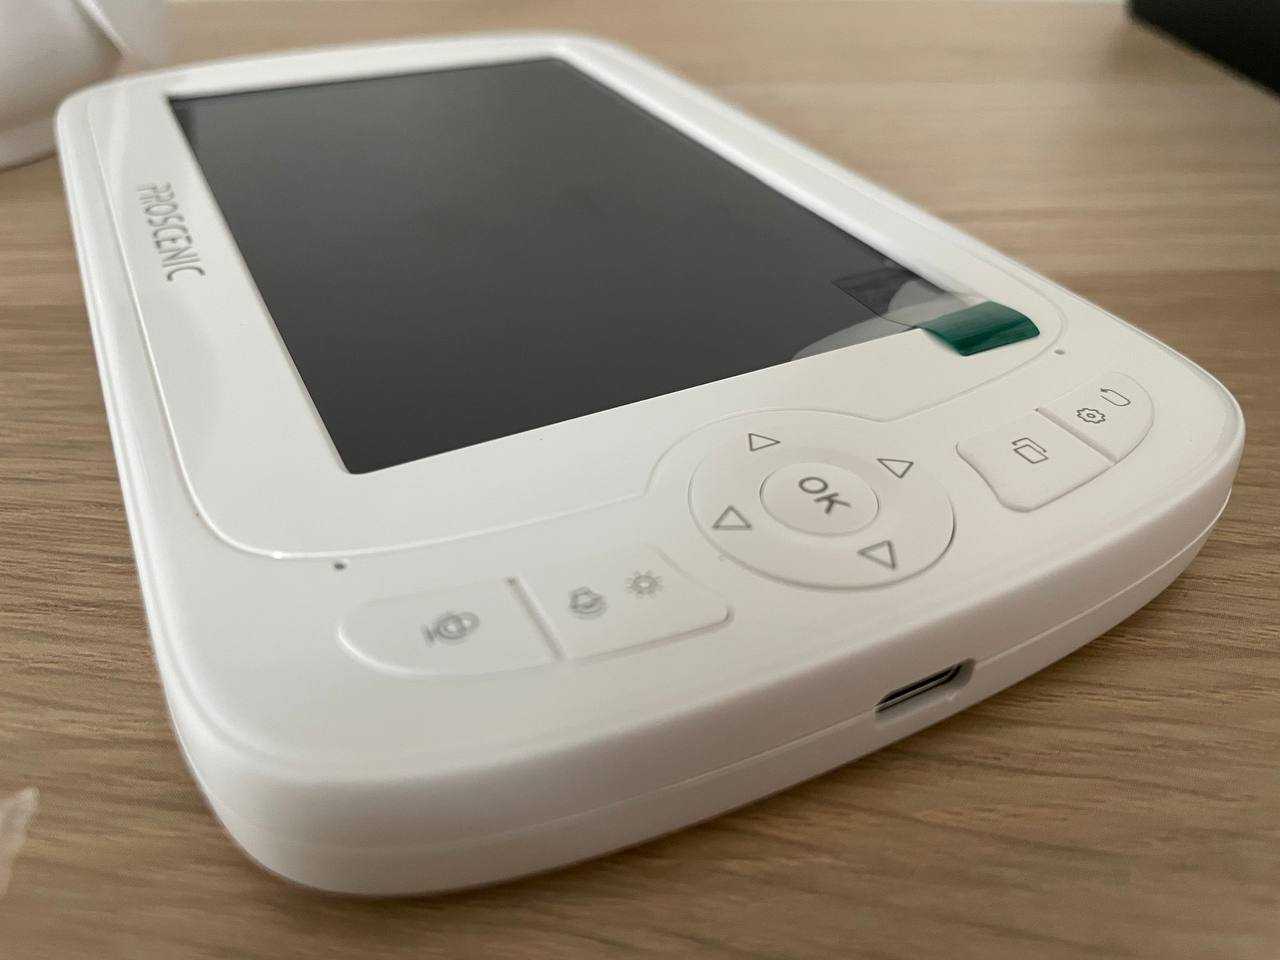 Recensione Proscenic BM300: un baby monitor potente e facile da usare